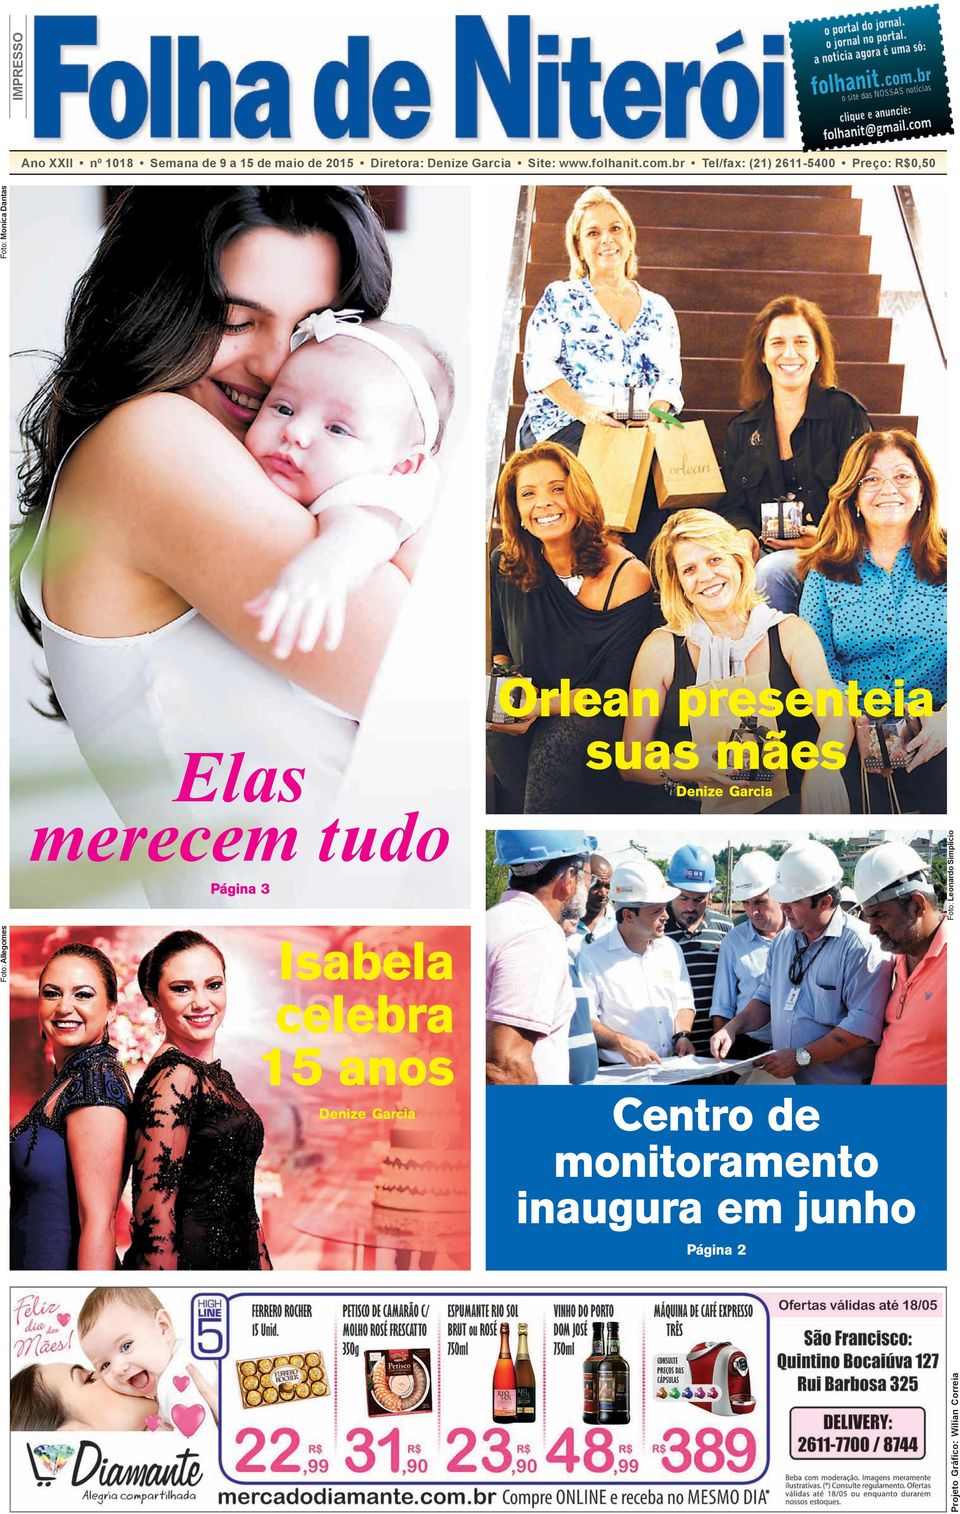 Página 3 Orlean presenteia suas mães Denize Garcia Foto: Leonardo Simplício Foto: Monica Dantas